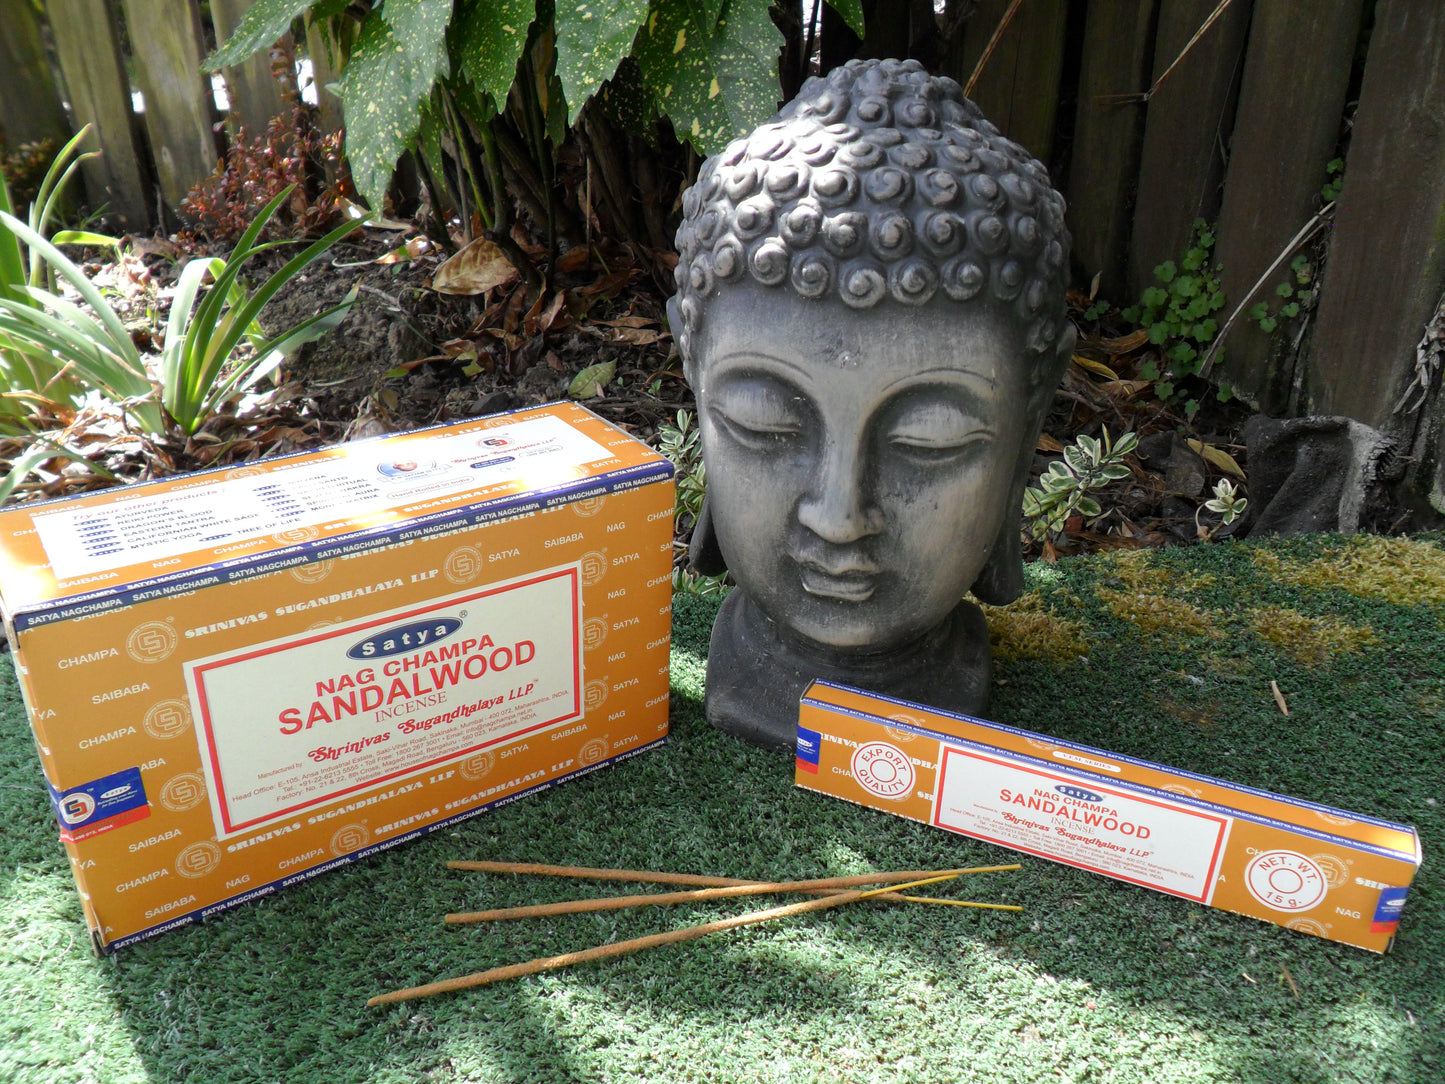 Sandalwood incense sticks